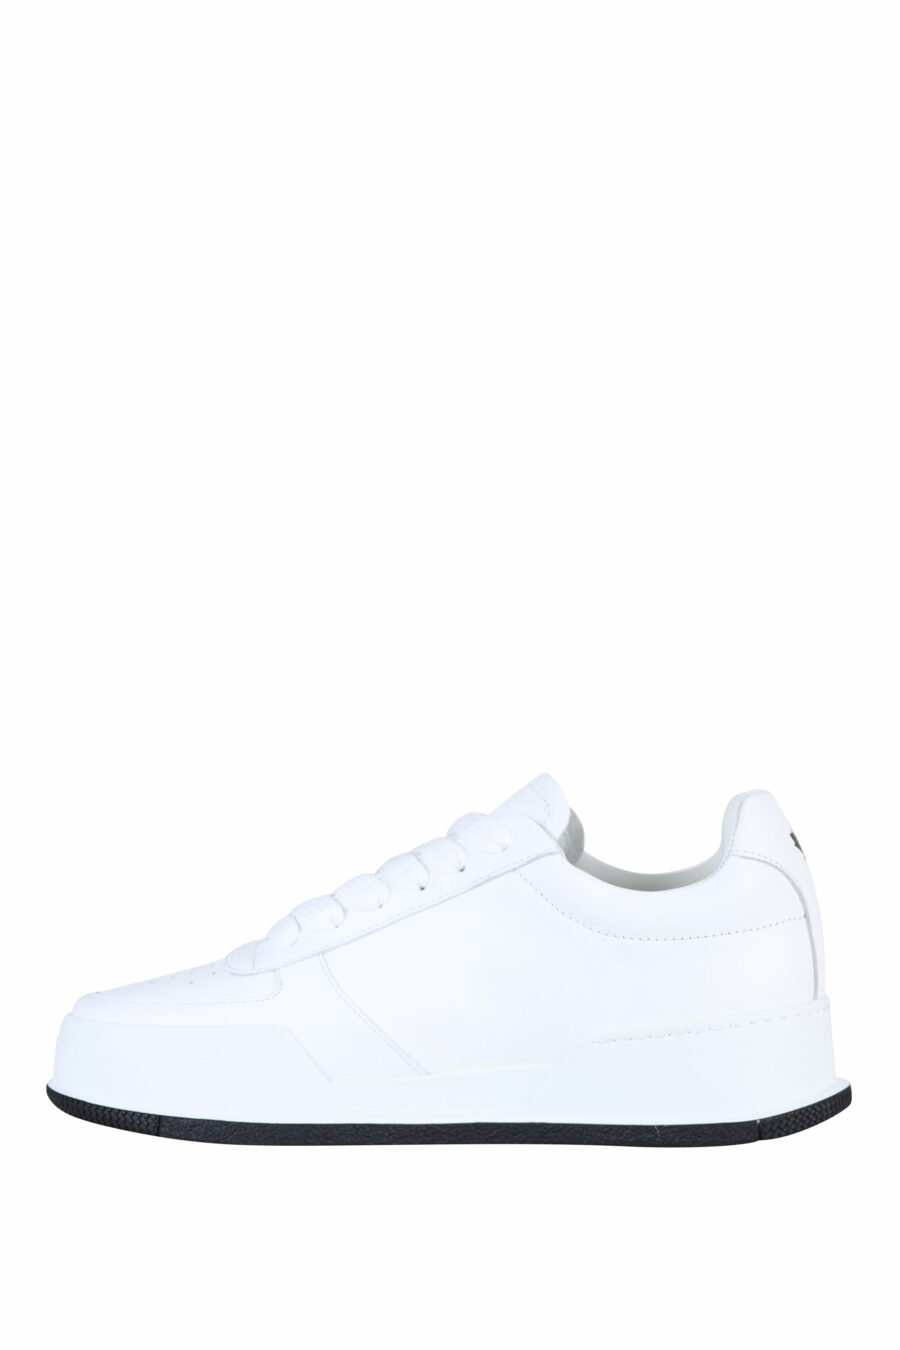 Zapatillas blancas con logo "icon" y suela negra - 8055777248850 2